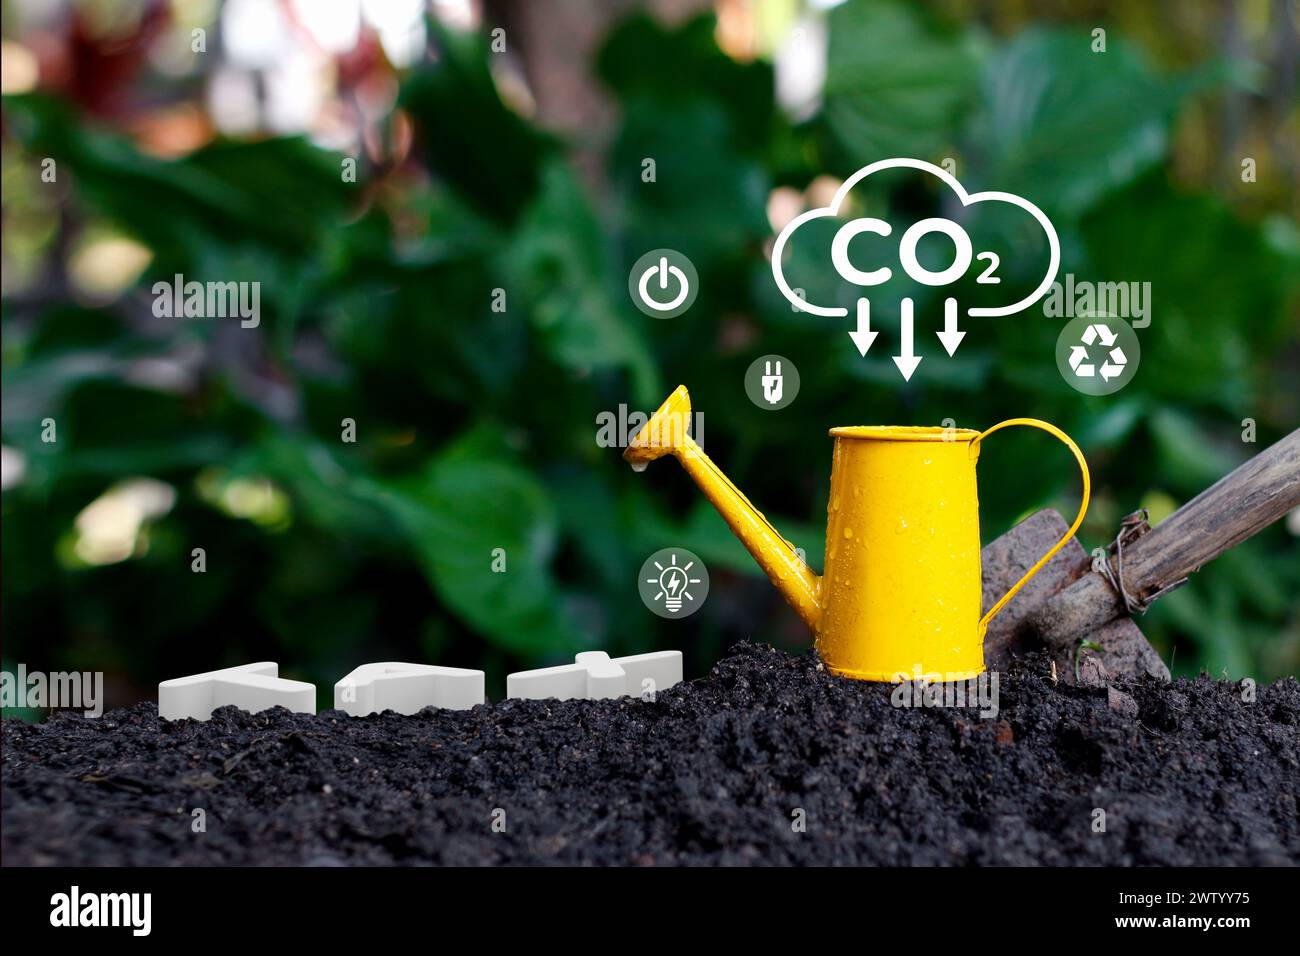 CO2-neutrale Konzepte und Konzepte für Null-Emissionen. Natürliche Umwelt Eine klimaneutrale langfristige Strategie Ziele für die Treibhausgasemissionen. Holzblock Stockfoto